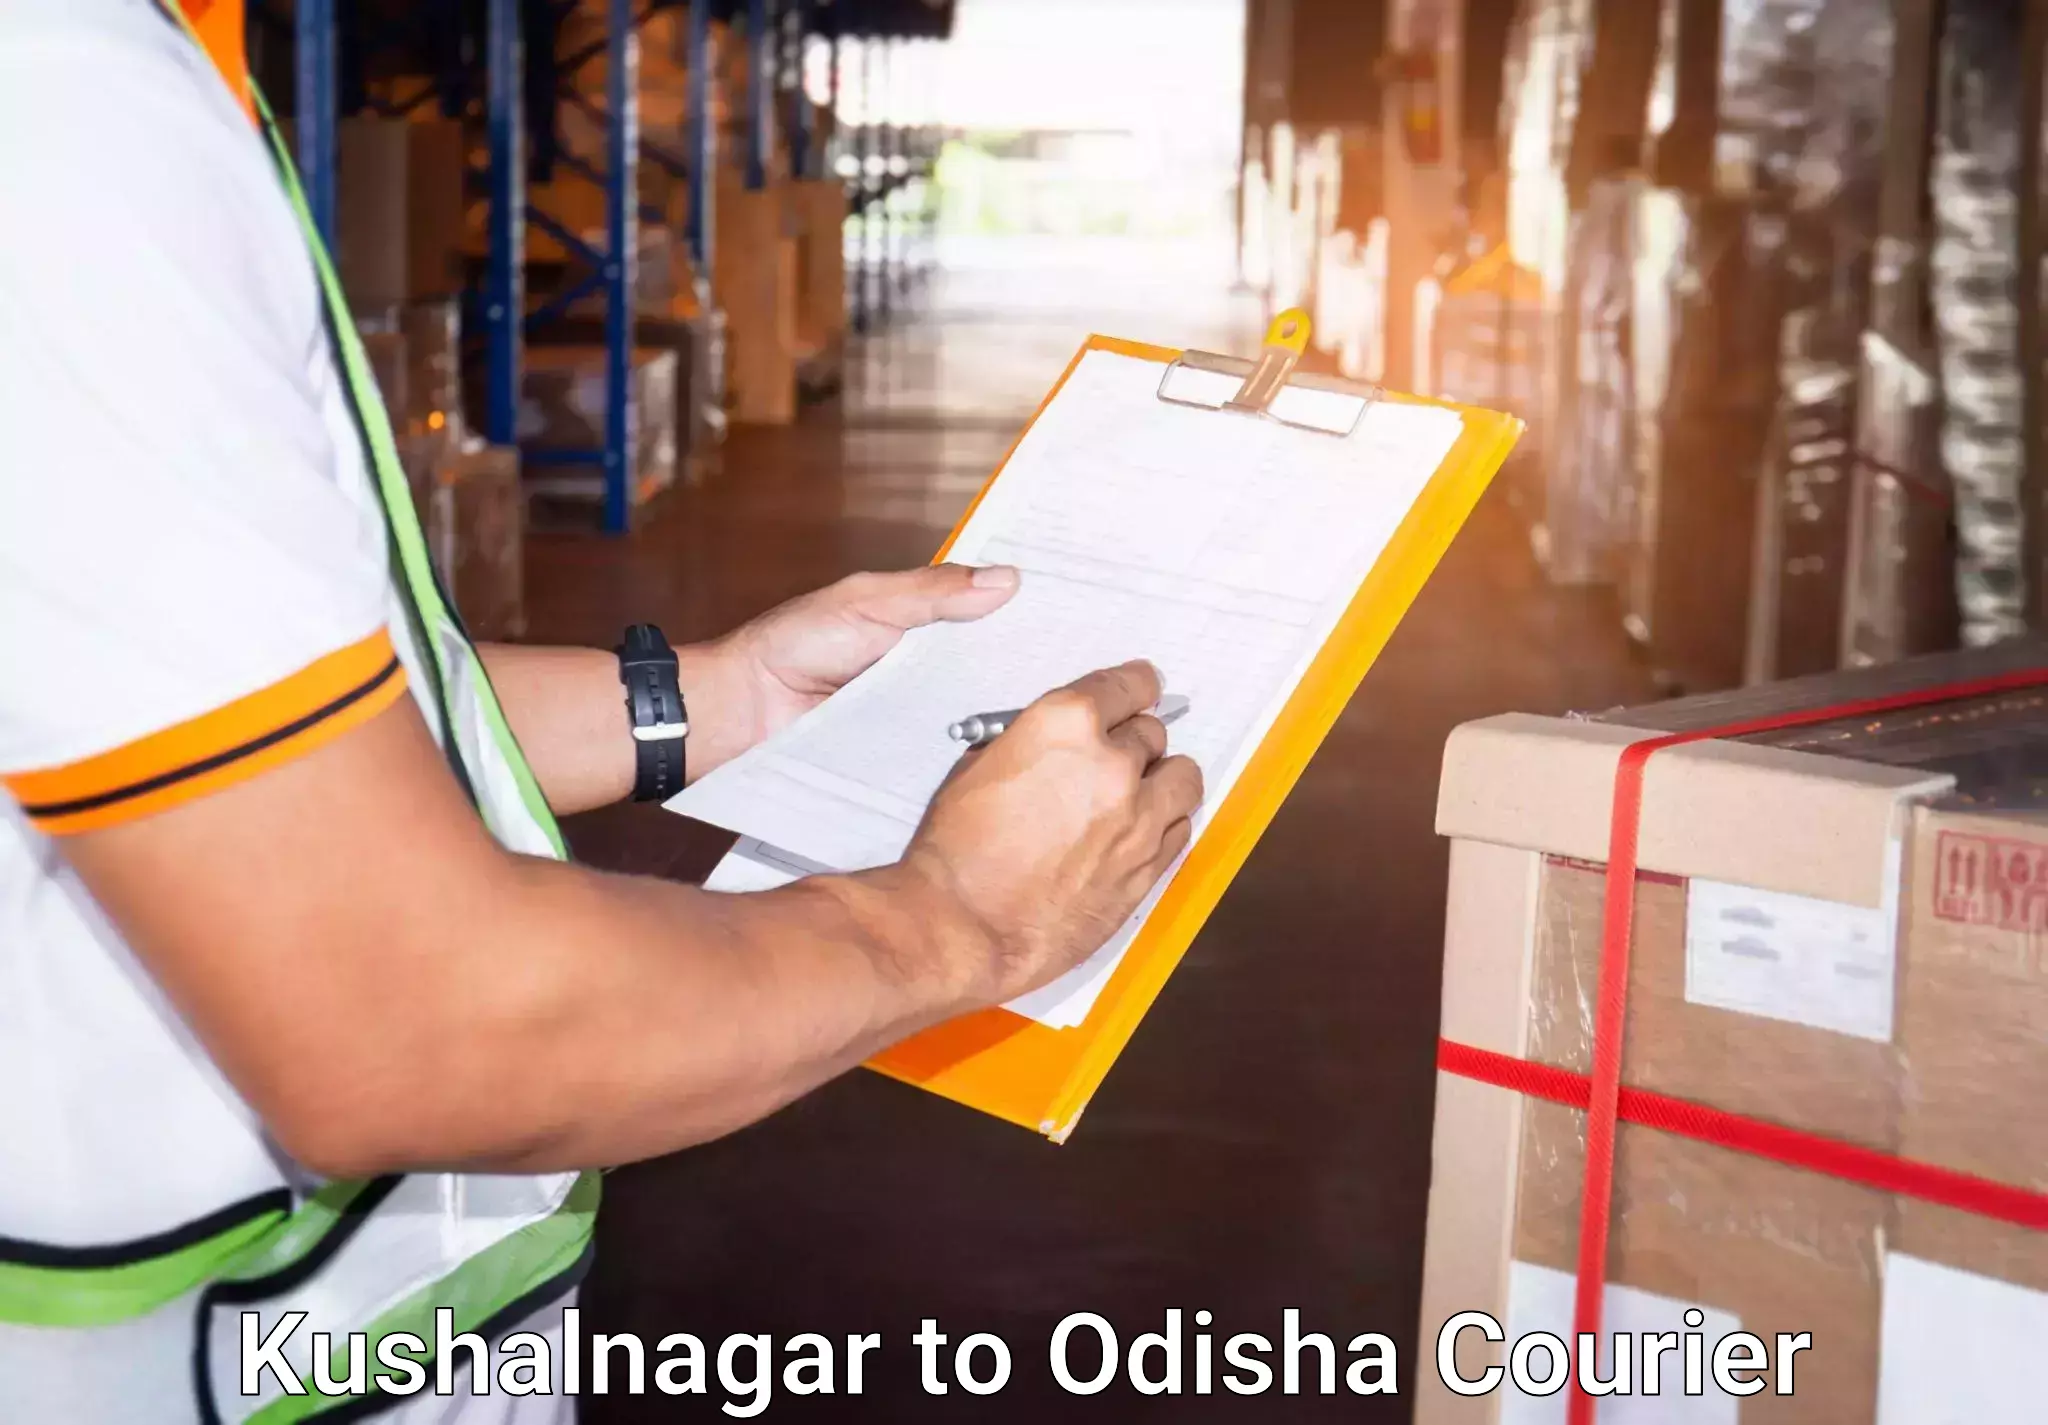 Luggage shipment specialists Kushalnagar to Odisha